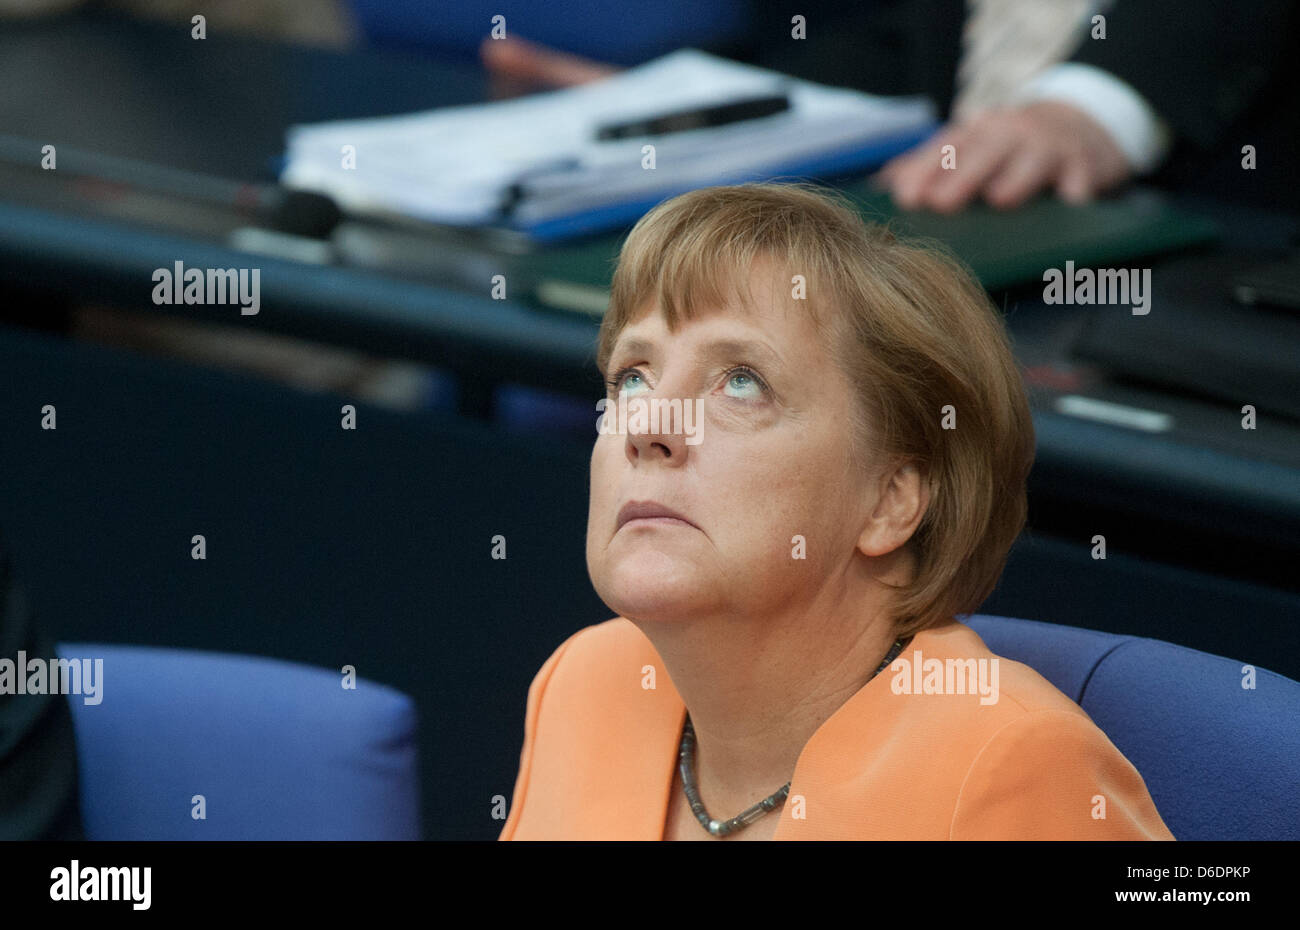 La chancelière allemande Angela Merkel participe à une réunion du budget semaine au Bundestag allemand à Berlin, Allemagne, 11 septembre 2012. Le parlement a commencé ses consultations sur le budget fédéral. Photo : MAURIZIO GAMBARINI Banque D'Images